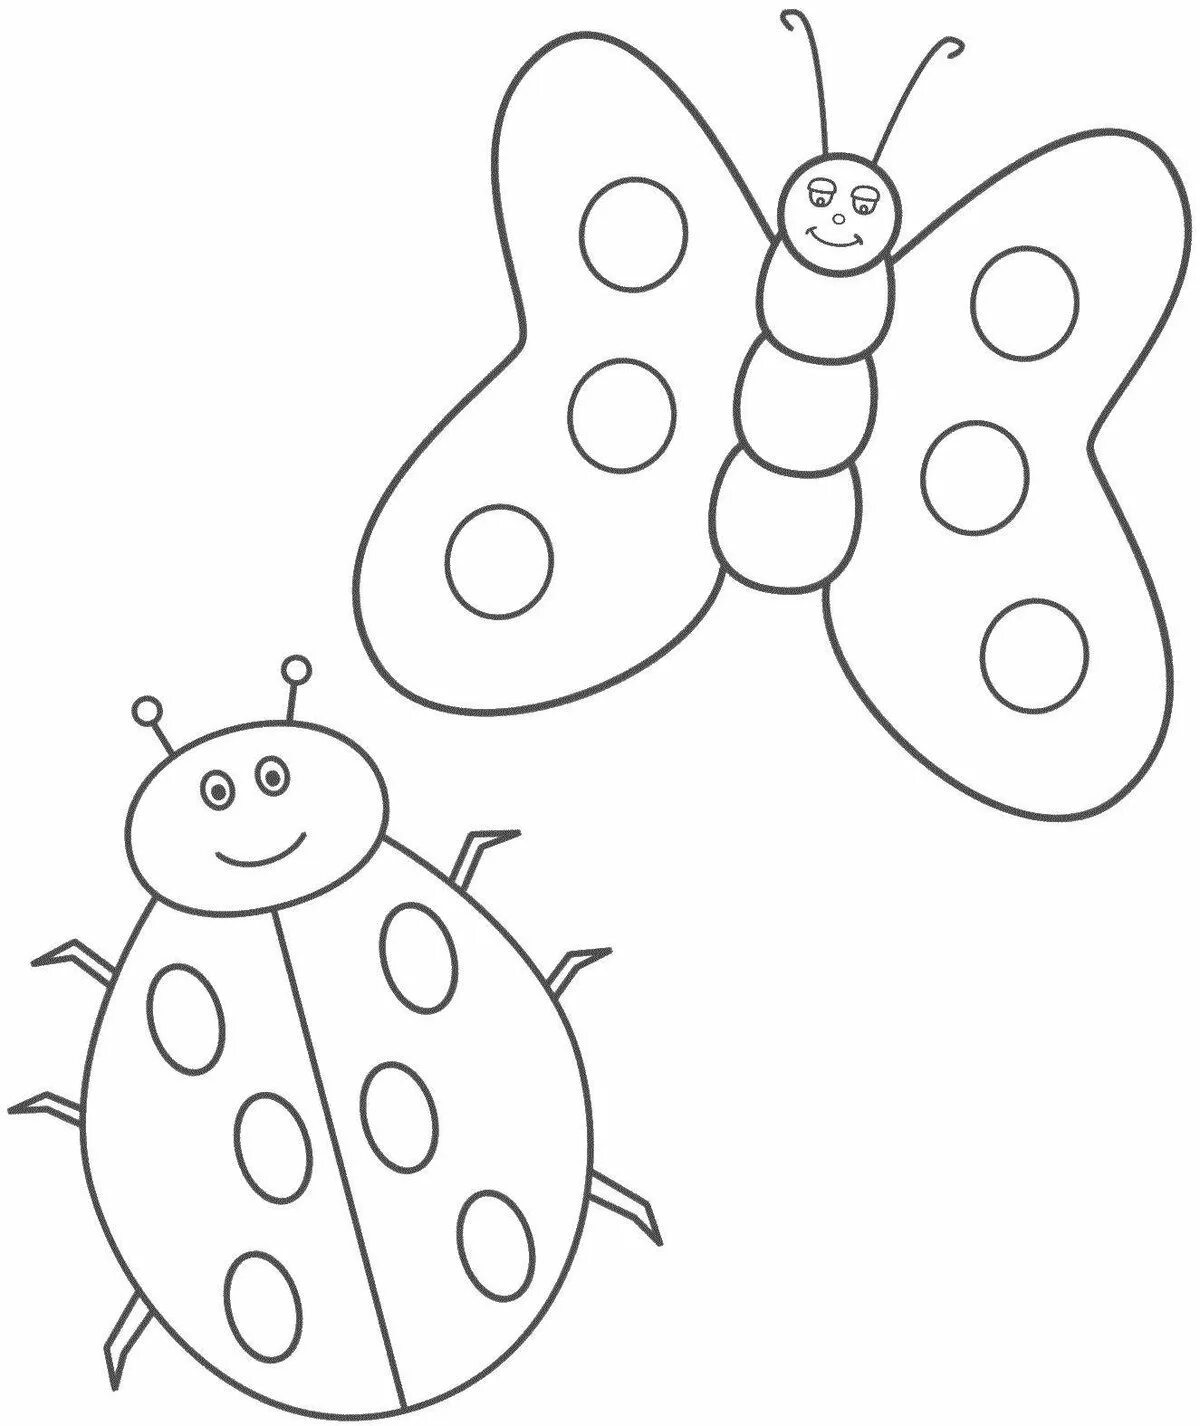 Раскраска насекомые для детей 3 лет. Насекомые. Раскраска. Бабочка раскраска для детей. Раскраска насекомые для малышей. Трафарет насекомые для детей.